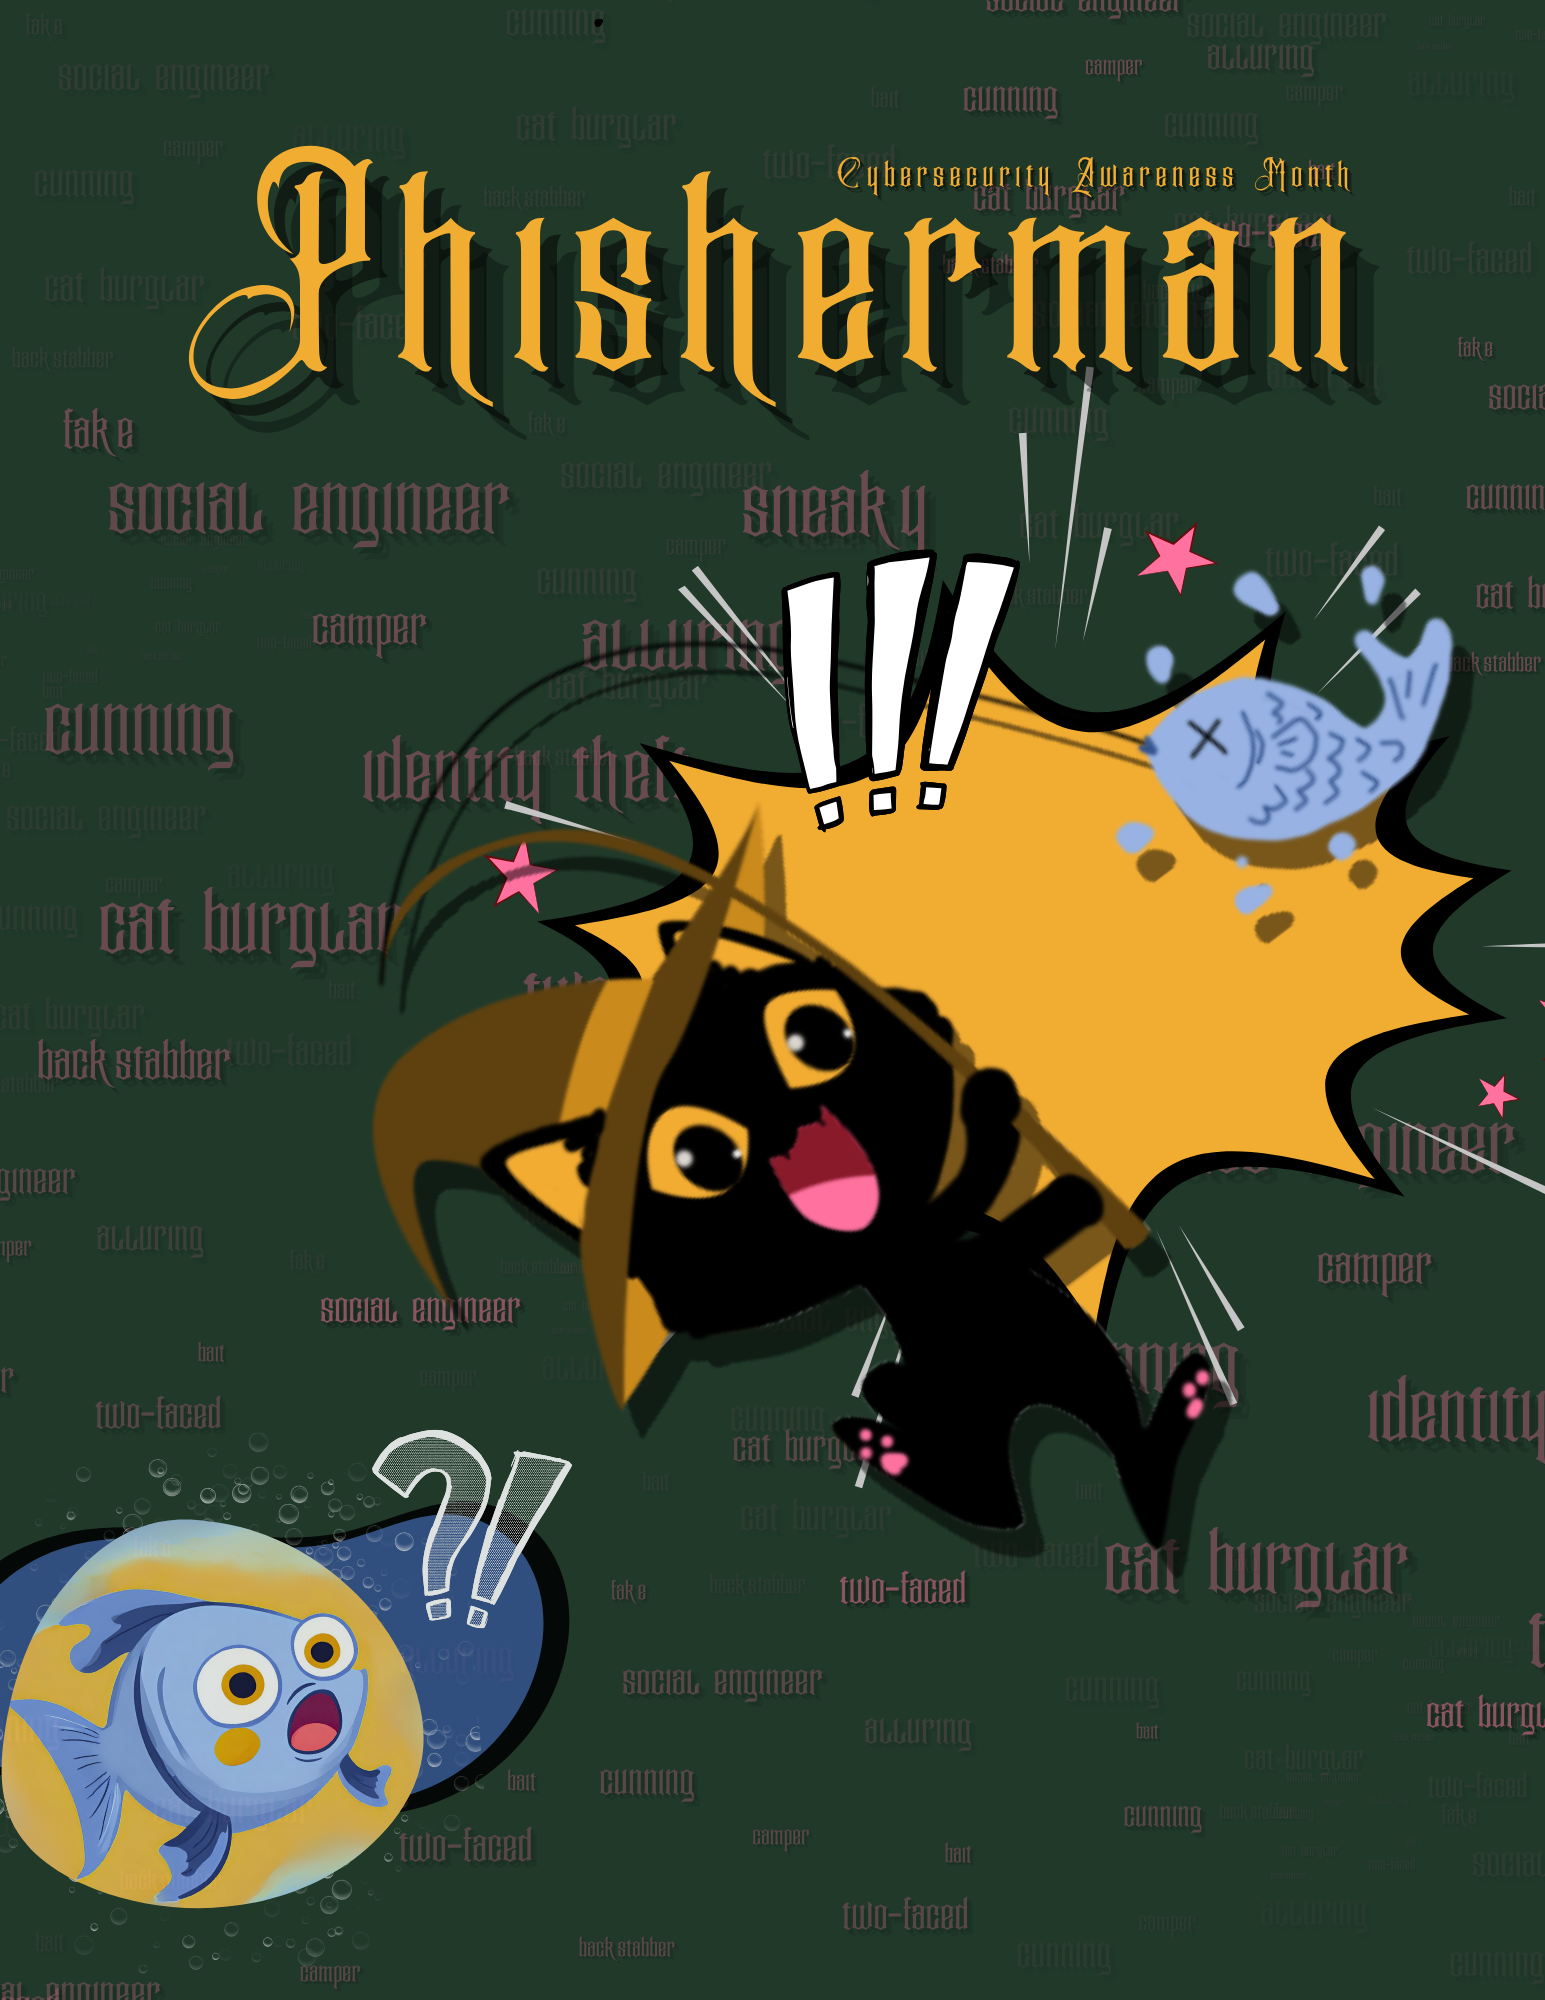 The Phisherman